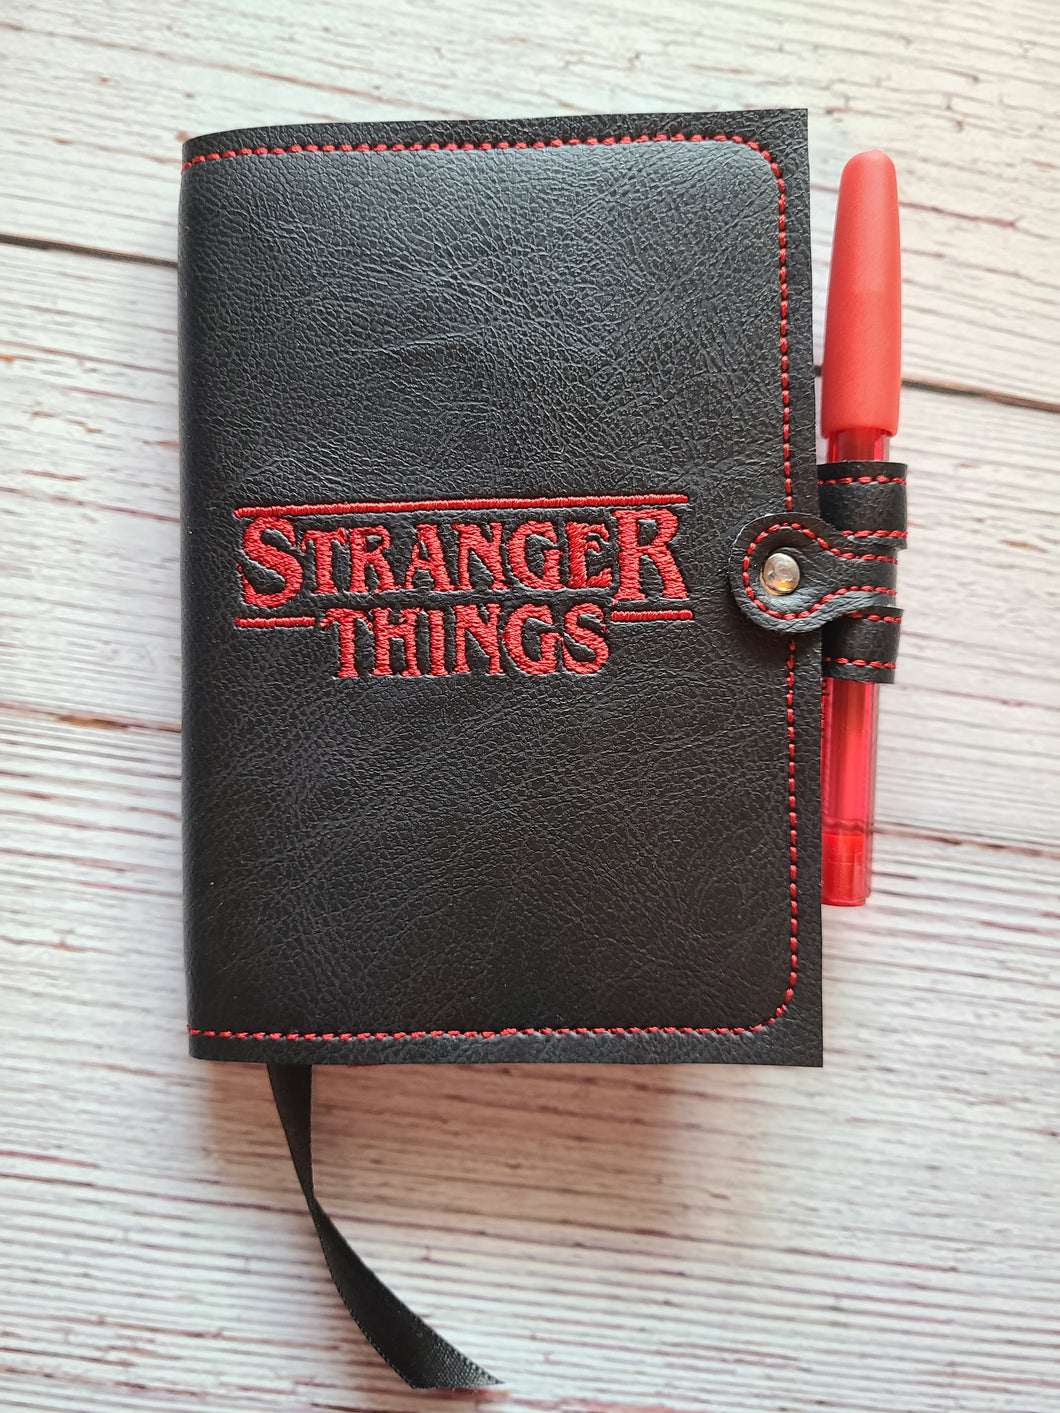 Mini Journal - Mini Notebook - Refillable Mini Journal Cover